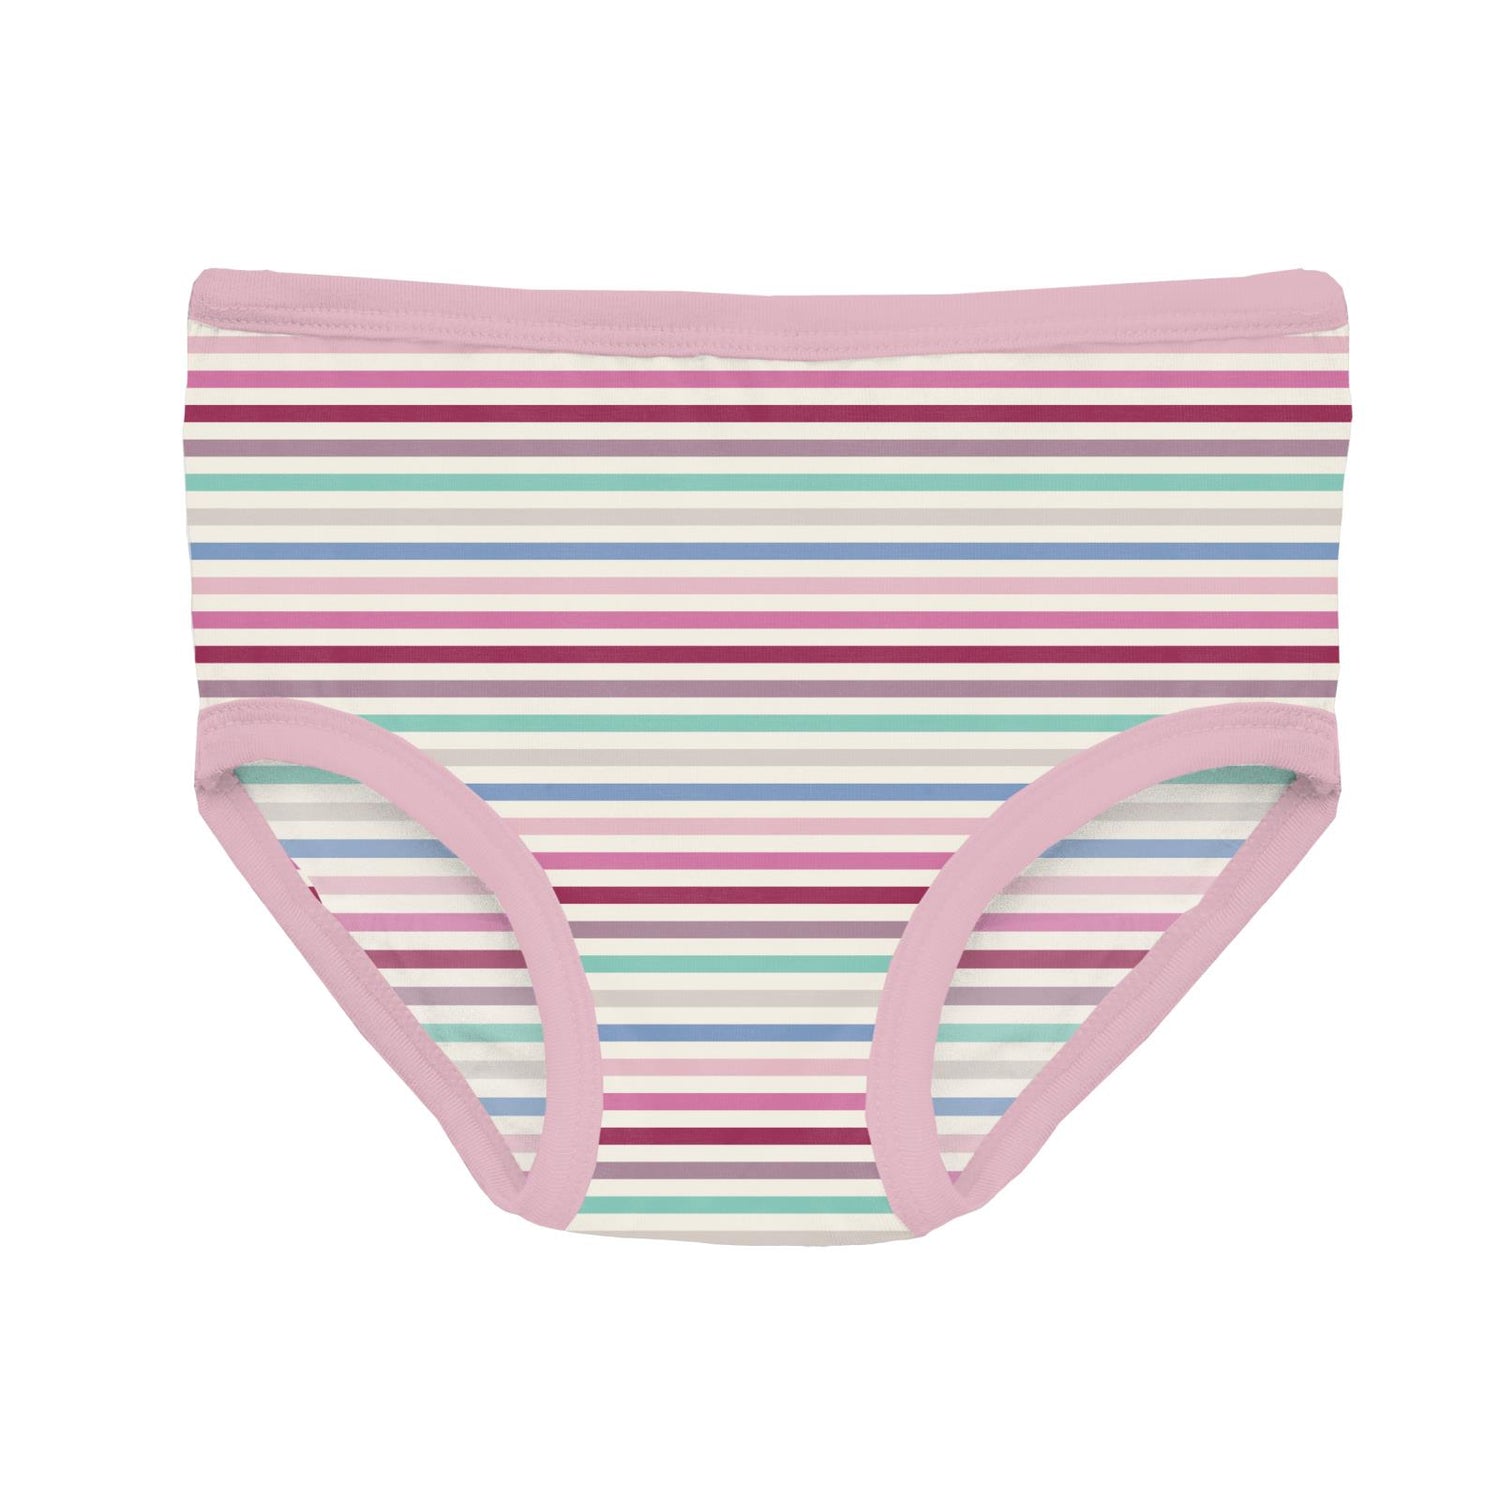 Print Girl's Underwear Set of 3 in Make Believe Stripe, Dream Blue & Cake Pop Candy Dreams